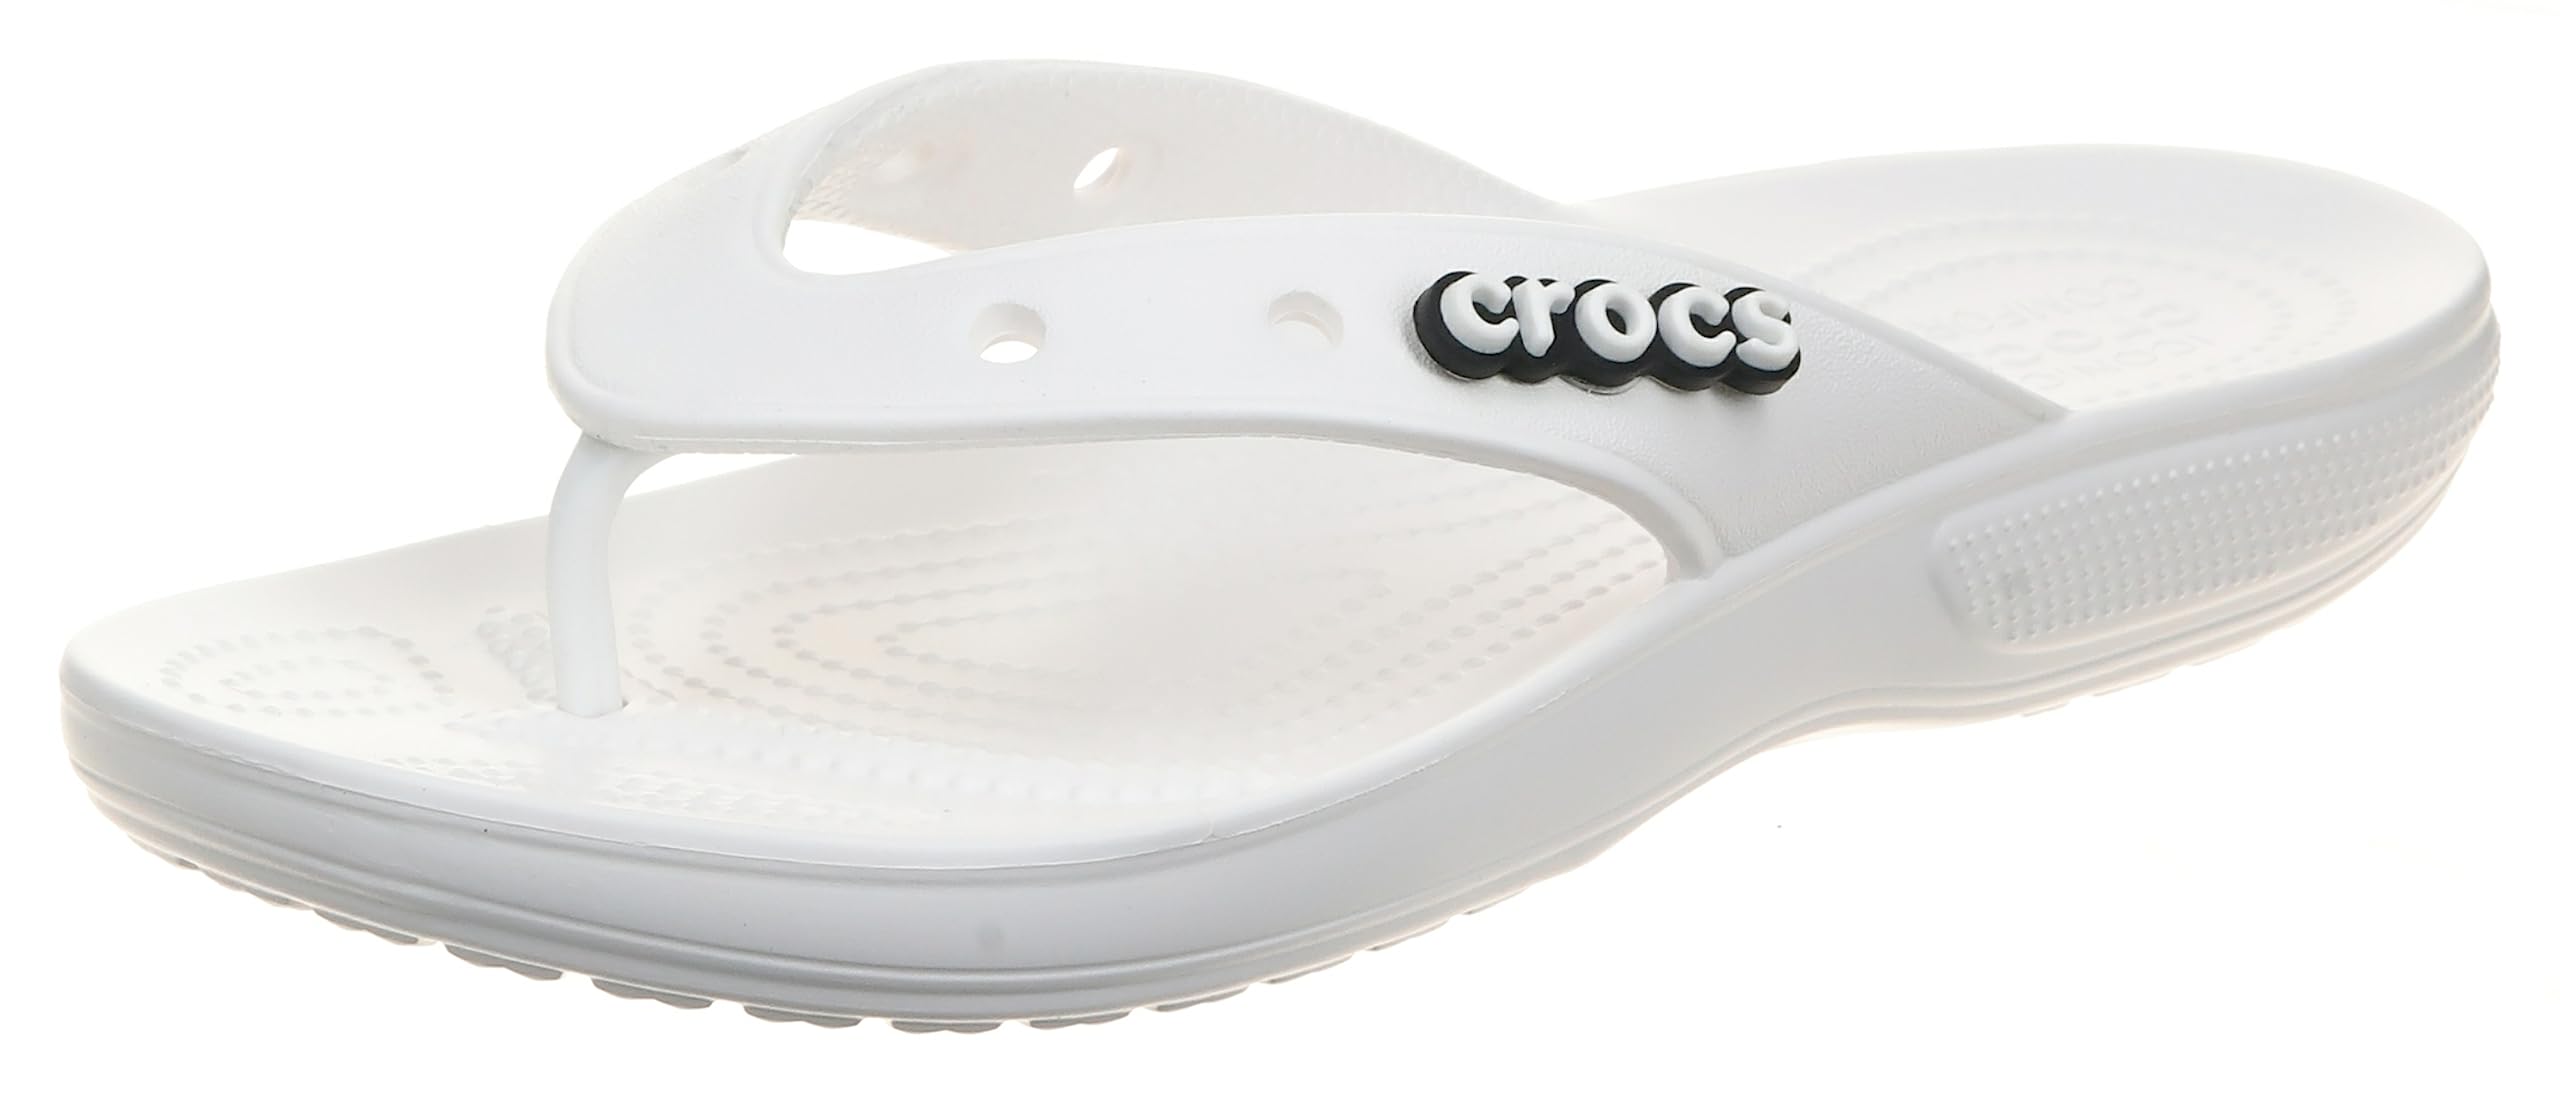 Crocs Unisex-Adult Men's and Women's Classic Flip Flops